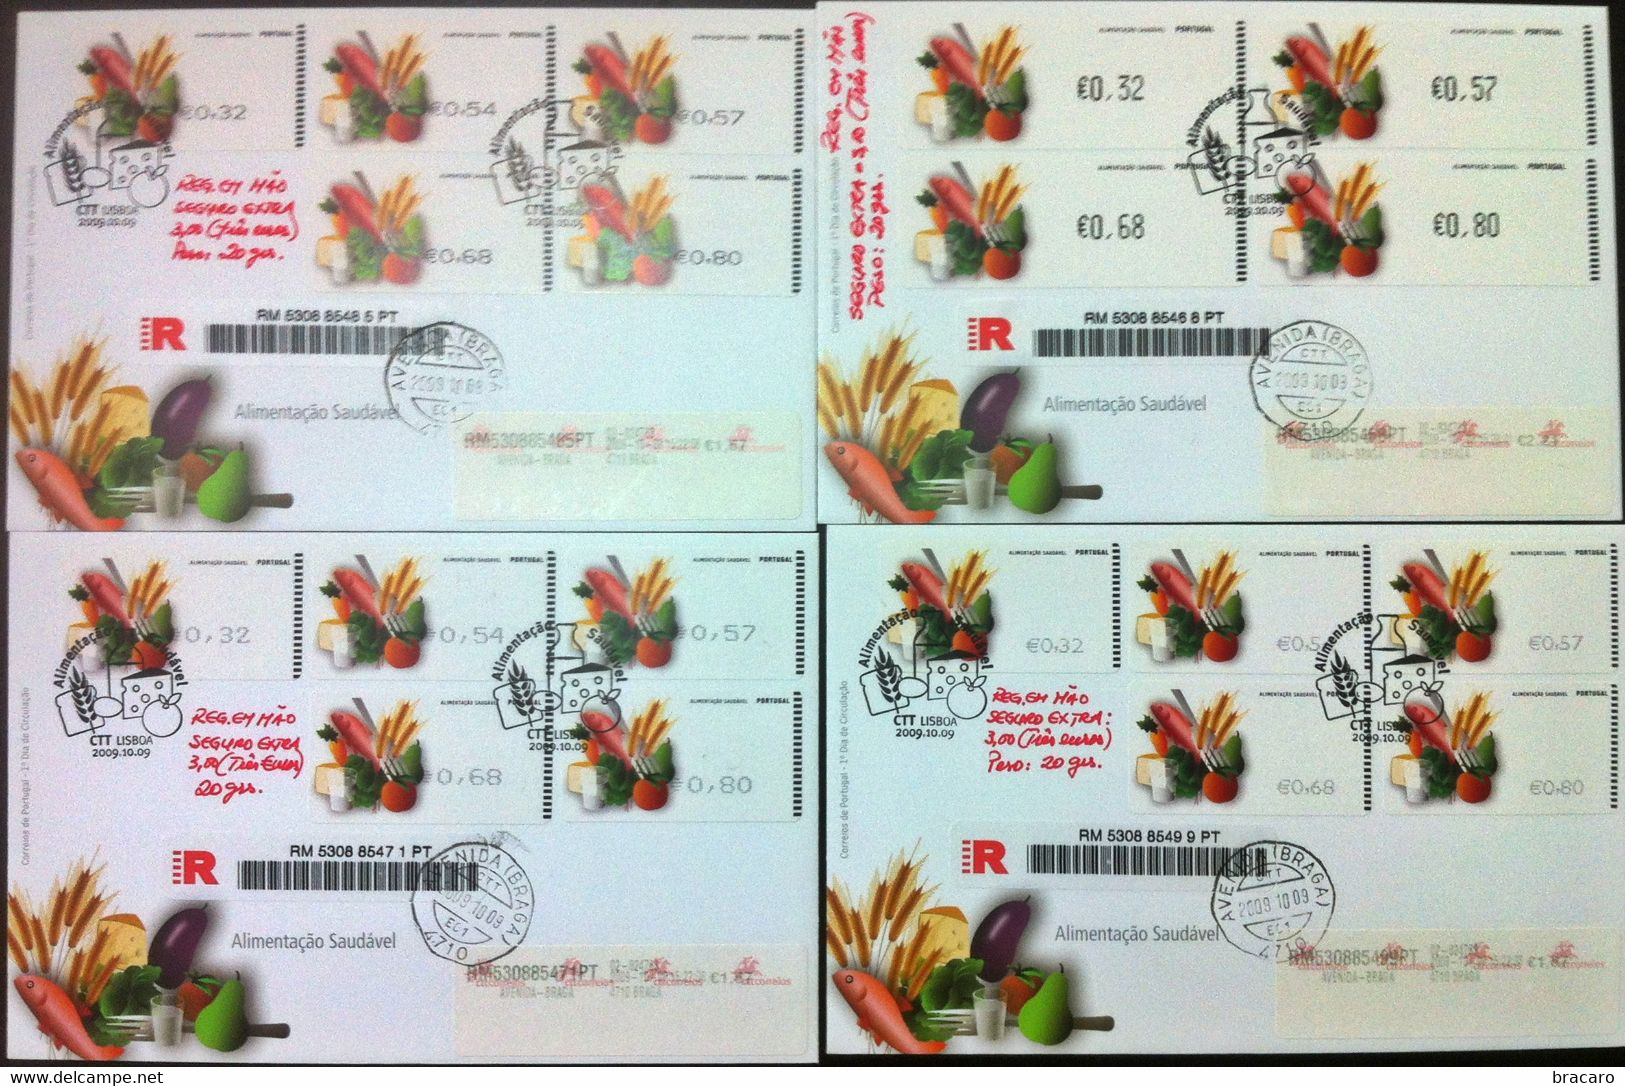 Portugal - ATM Machine Stamps - FDC (cover) X 4 - Alimentação Saudável 2009 - Registered, Cancel Braga - Machines à Affranchir (EMA)